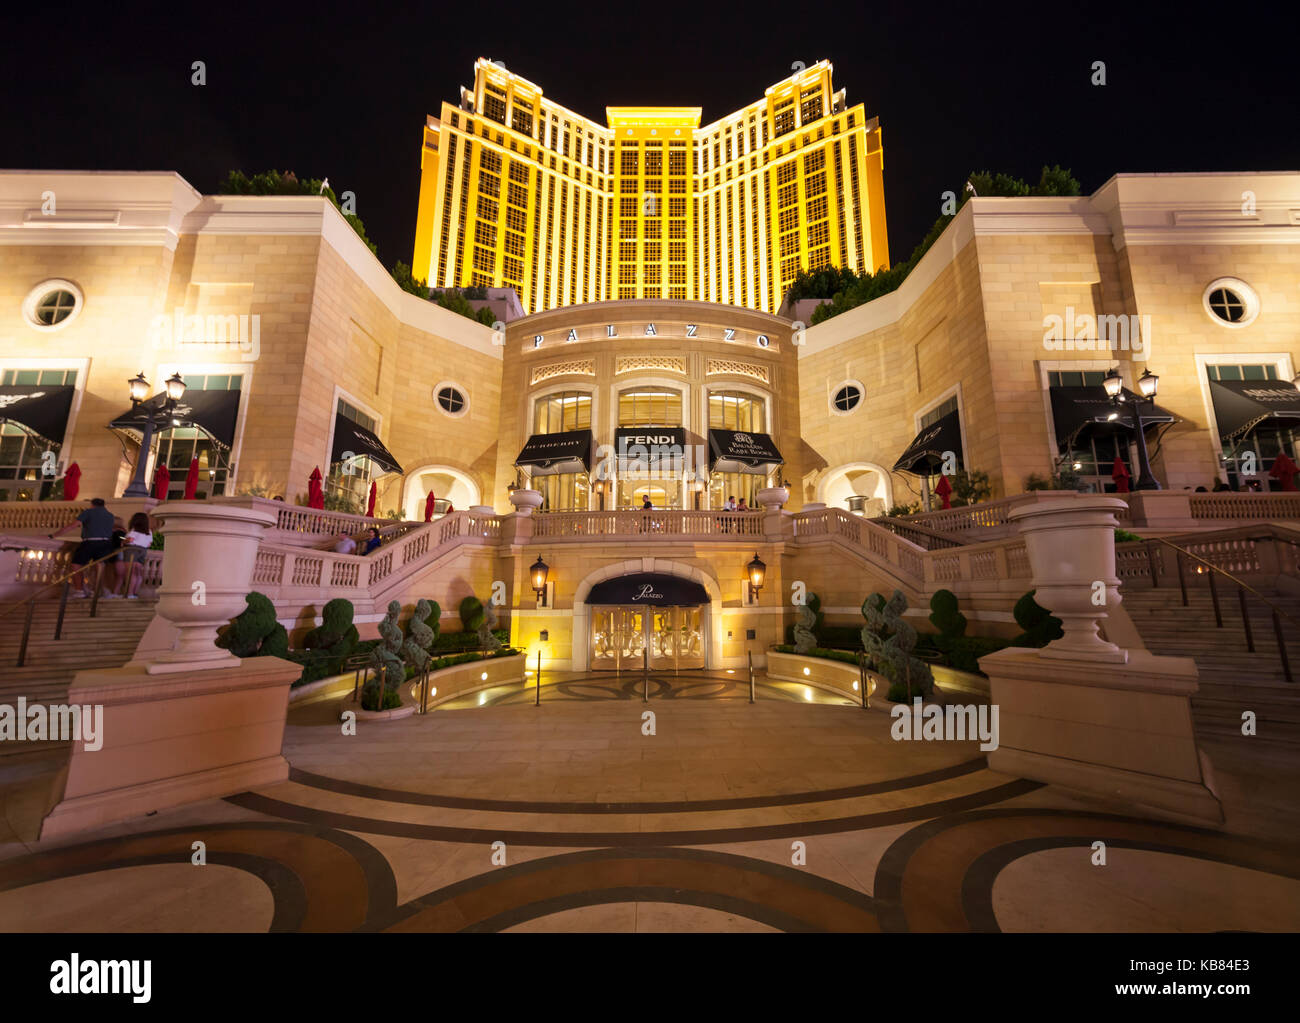 Une vue de nuit de l'Hôtel Palazzo sur Las Vegas Boulevard, à Las Vegas, Nevada. Banque D'Images